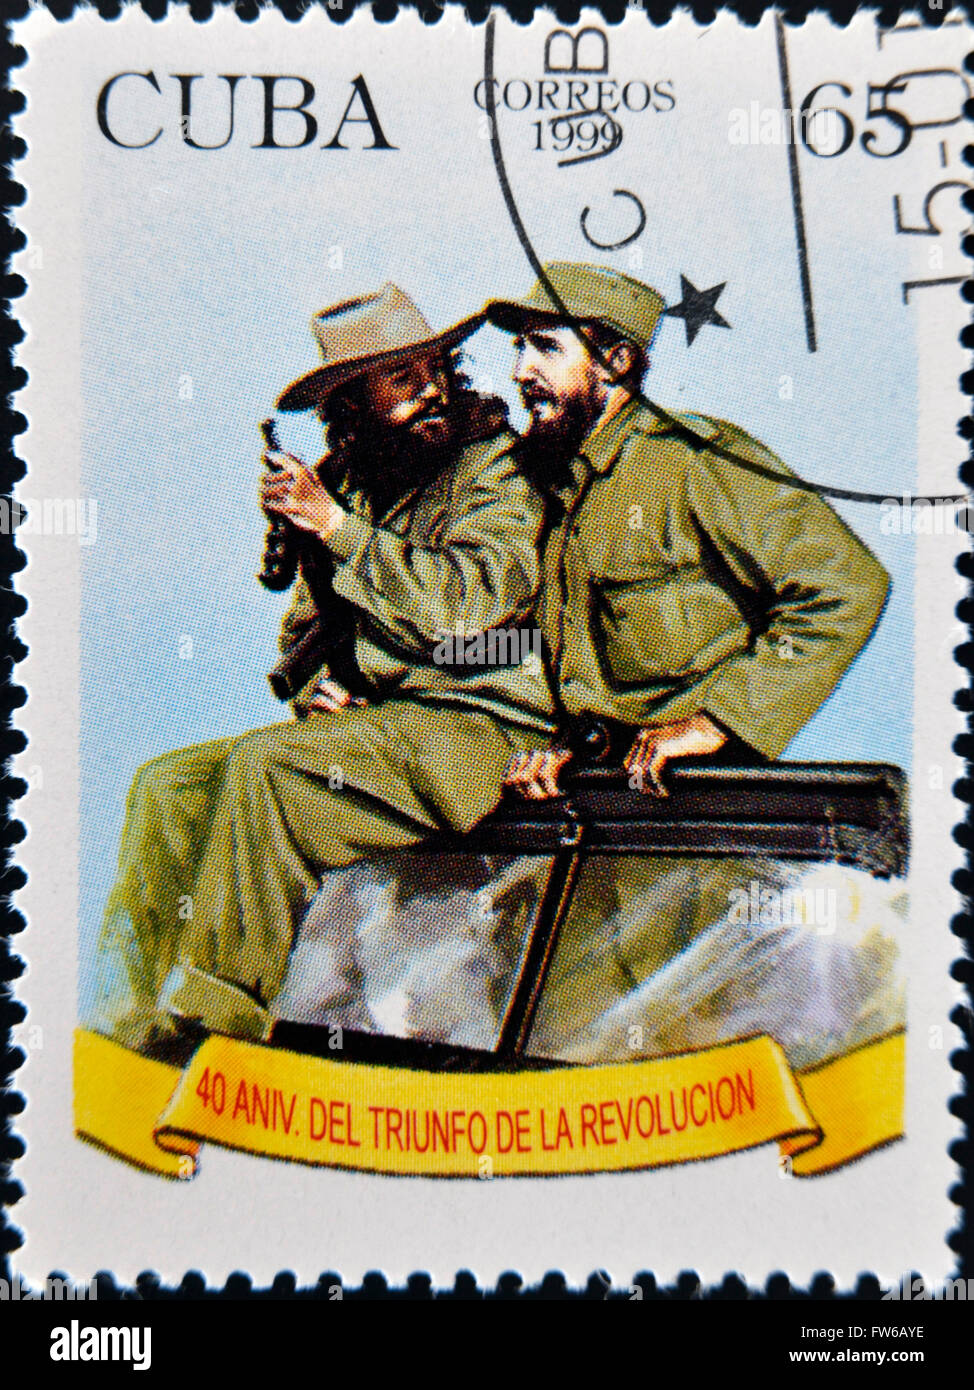 CUBA - CIRCA 1999: A stamp printed in Cuba shows Image of Fidel Castro and Che Guevara, circa 1999 Stock Photo